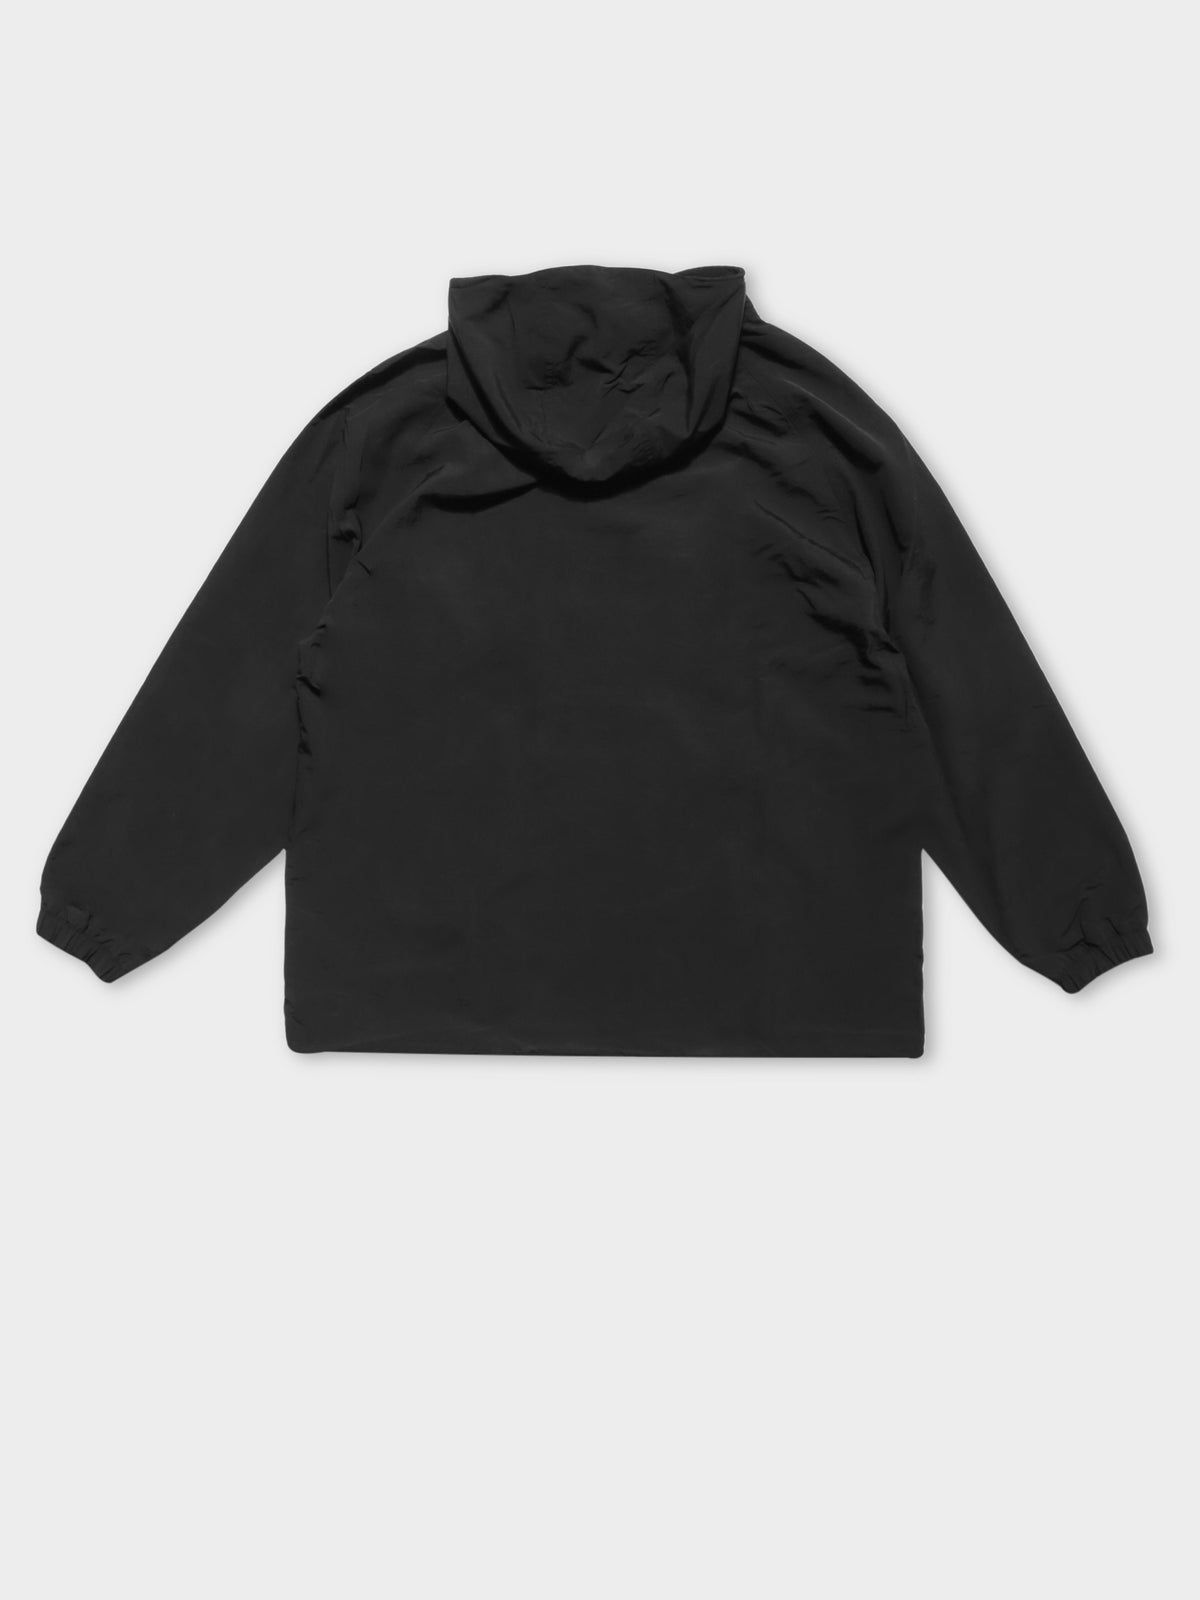 Adiprene Windbreaker Jacket in Black